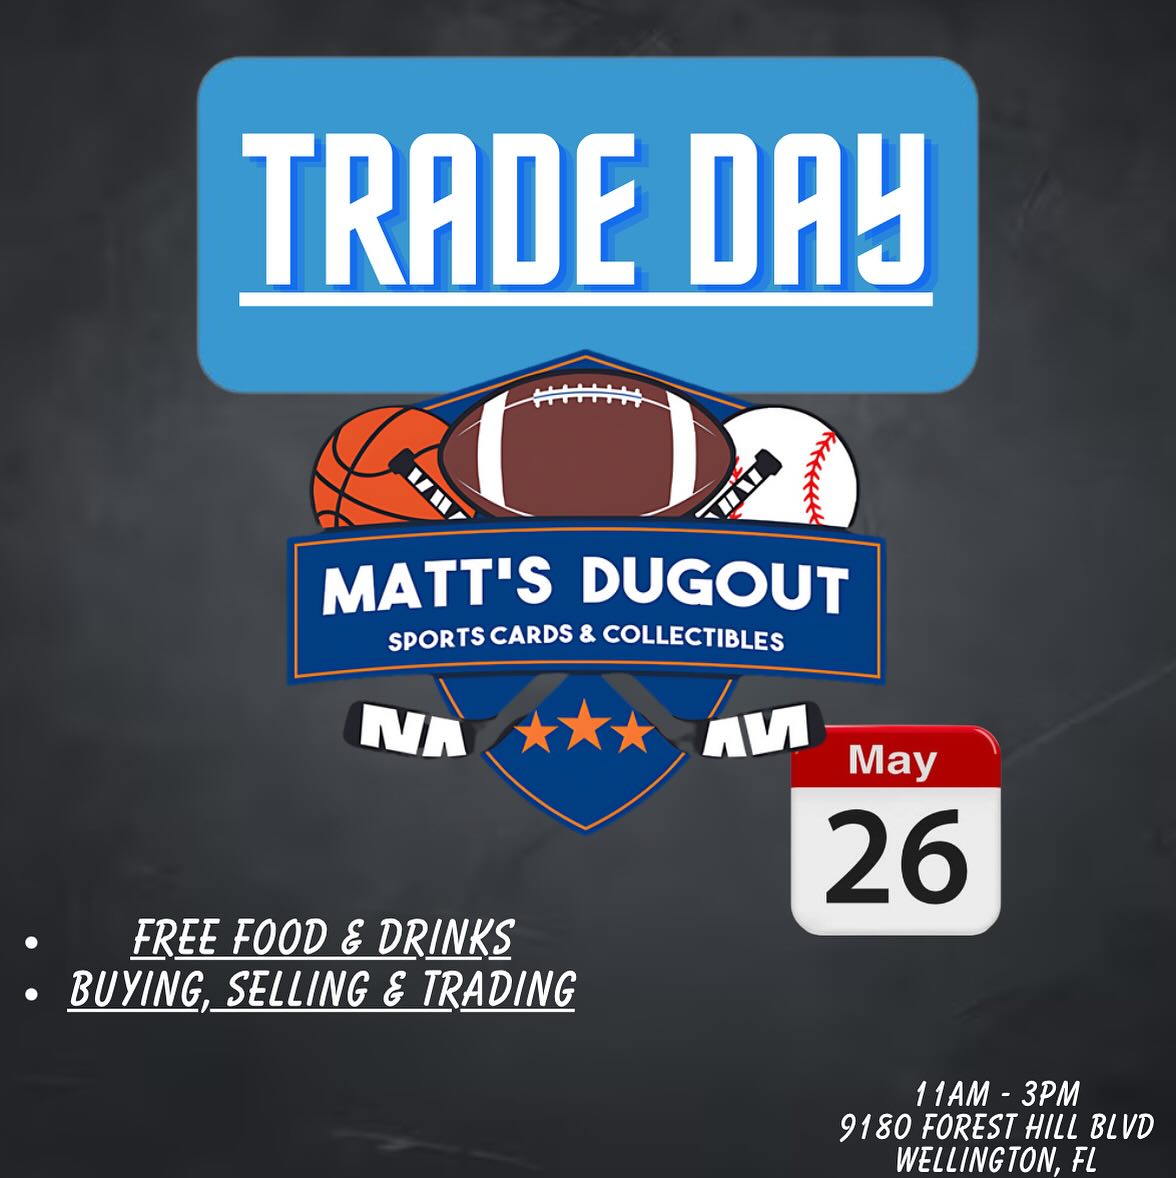 Trade Day at Matt's Dugout - Wellington